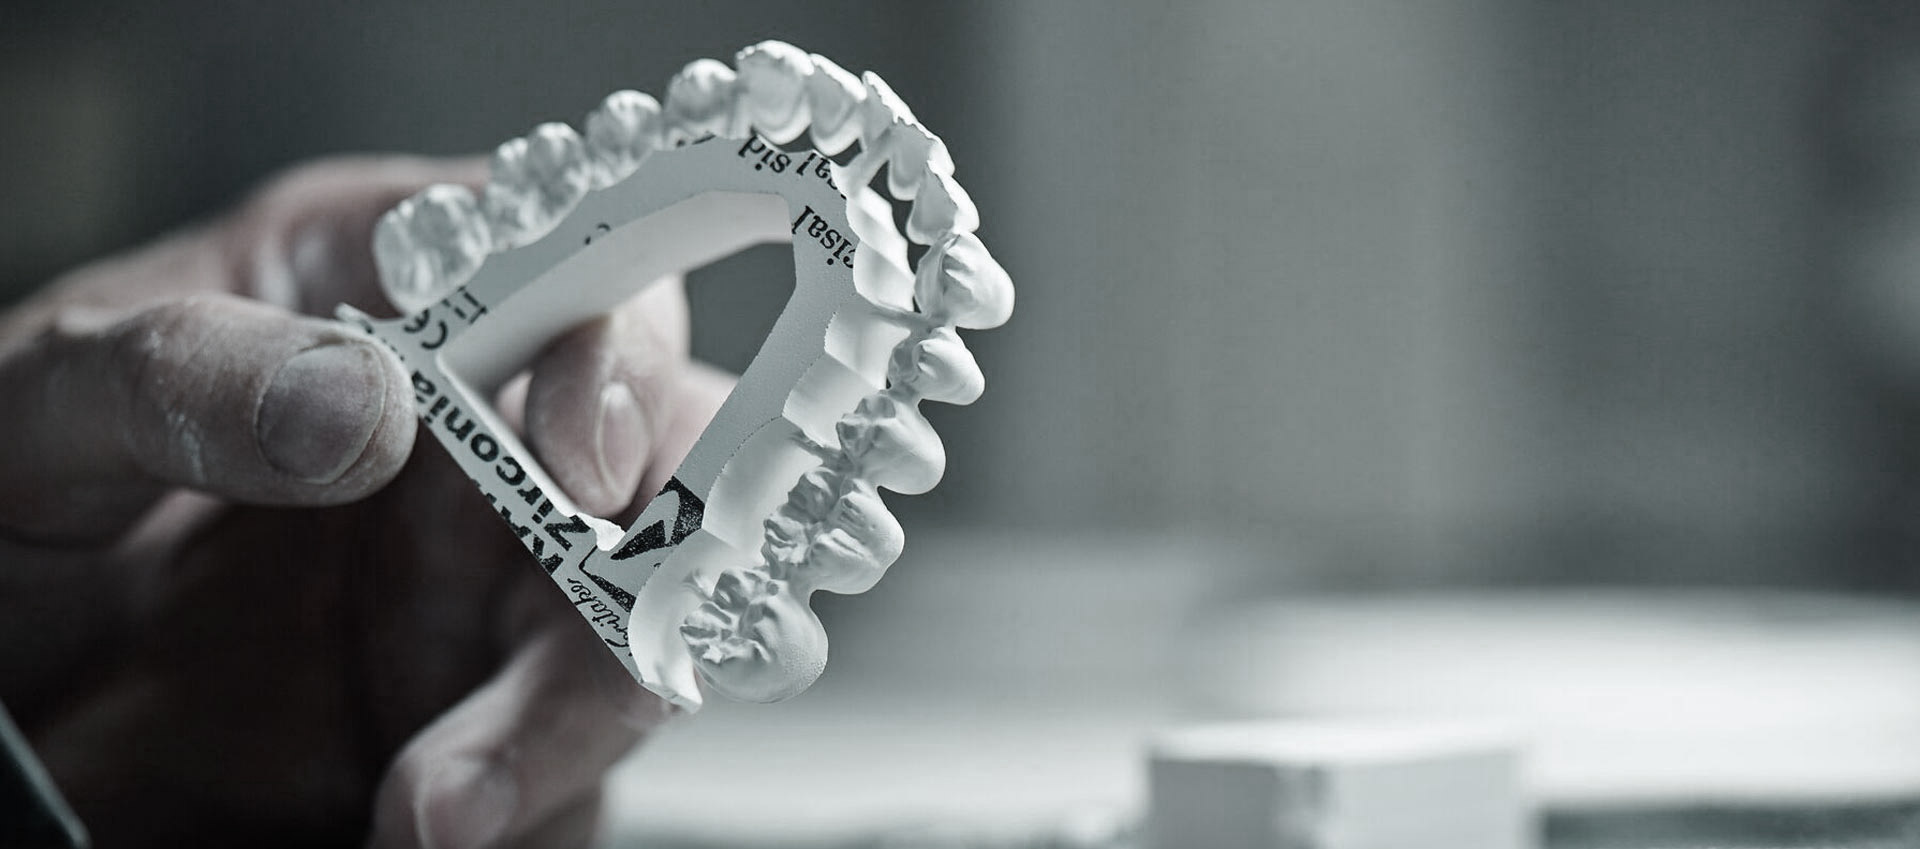 Hanker Dental Wir bieten Präzisionslösungen mit Qualität. 3